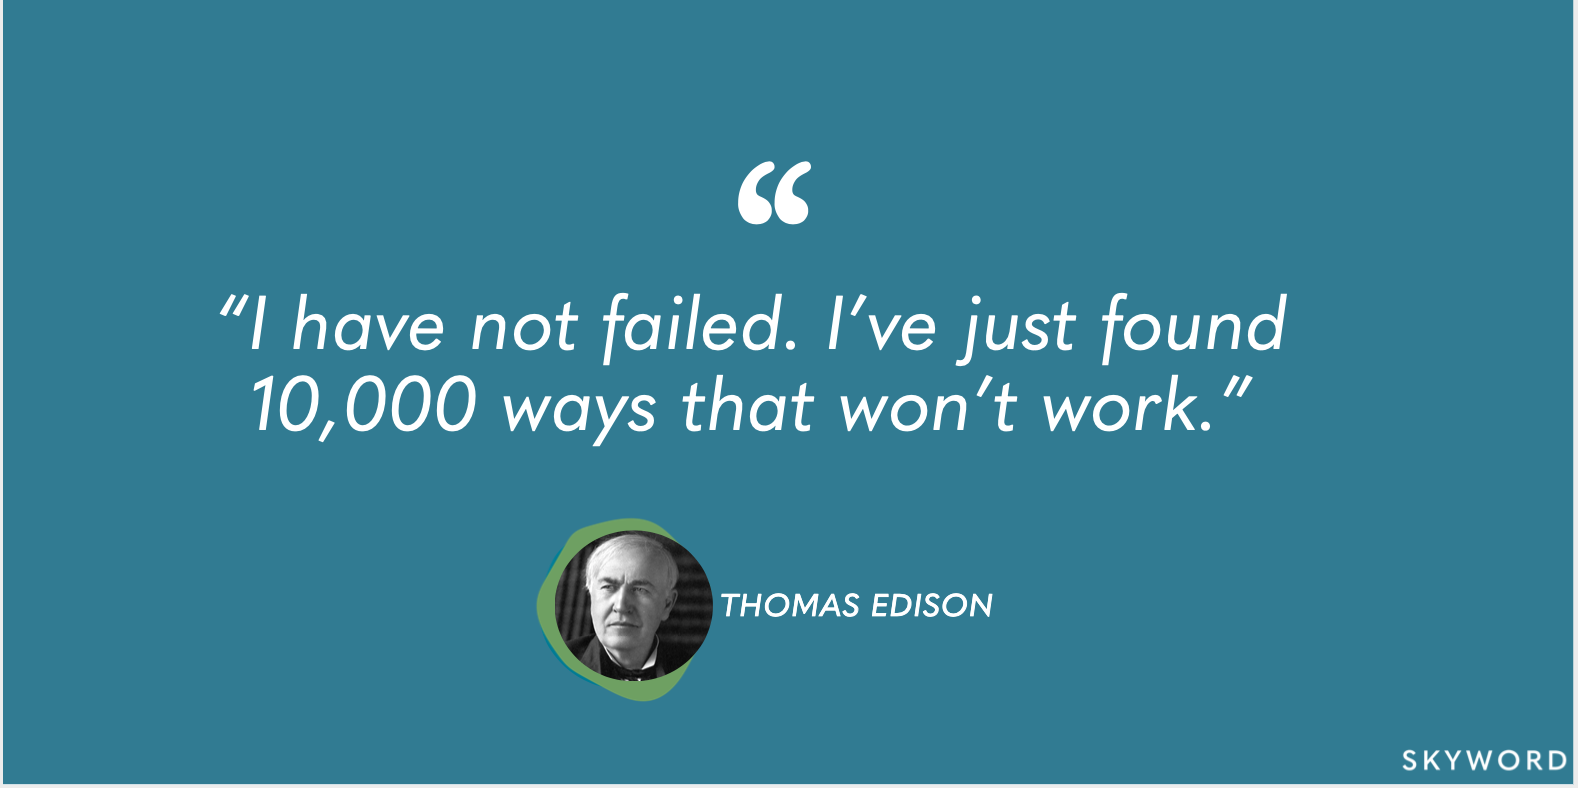 thomas edison failure quote